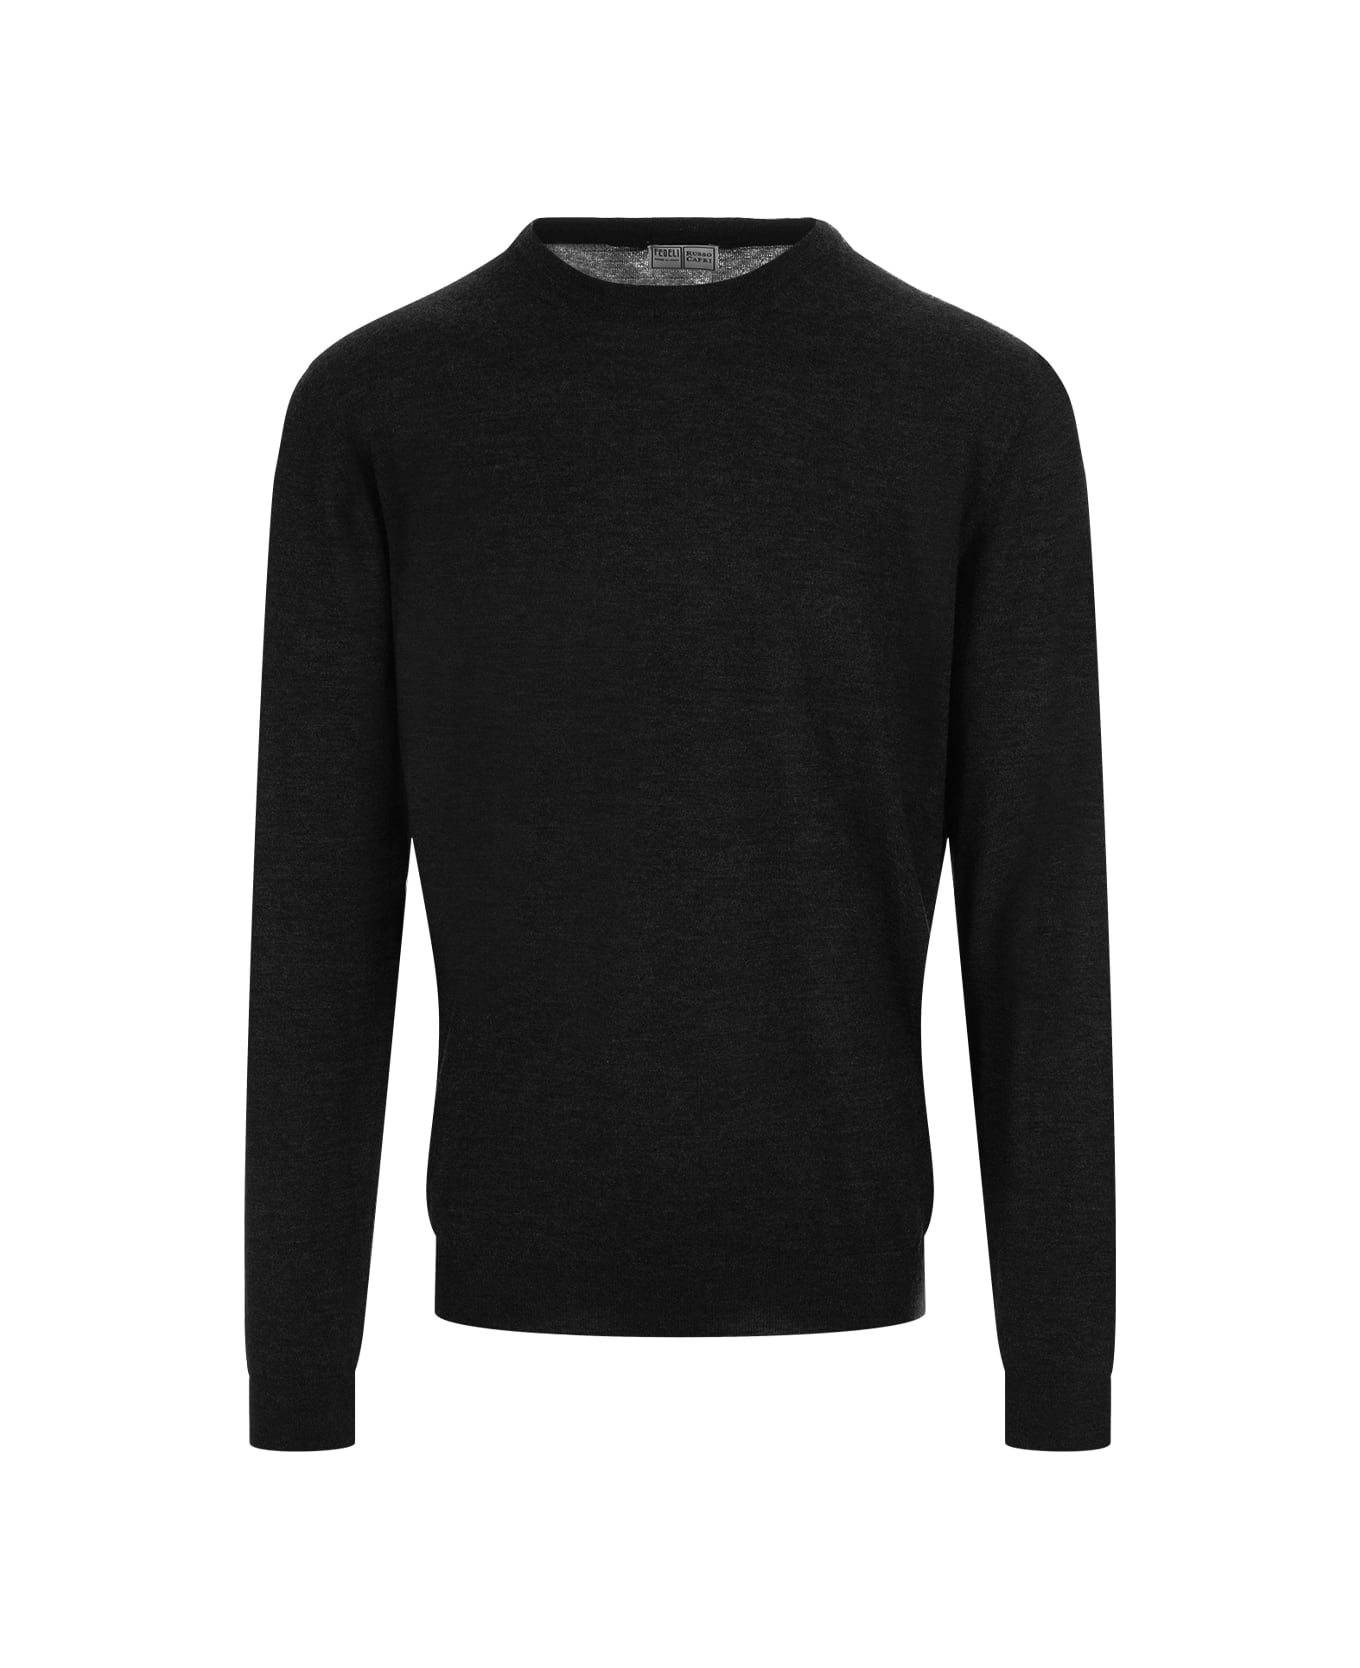 Fedeli Black Cashmere Sweater - Black